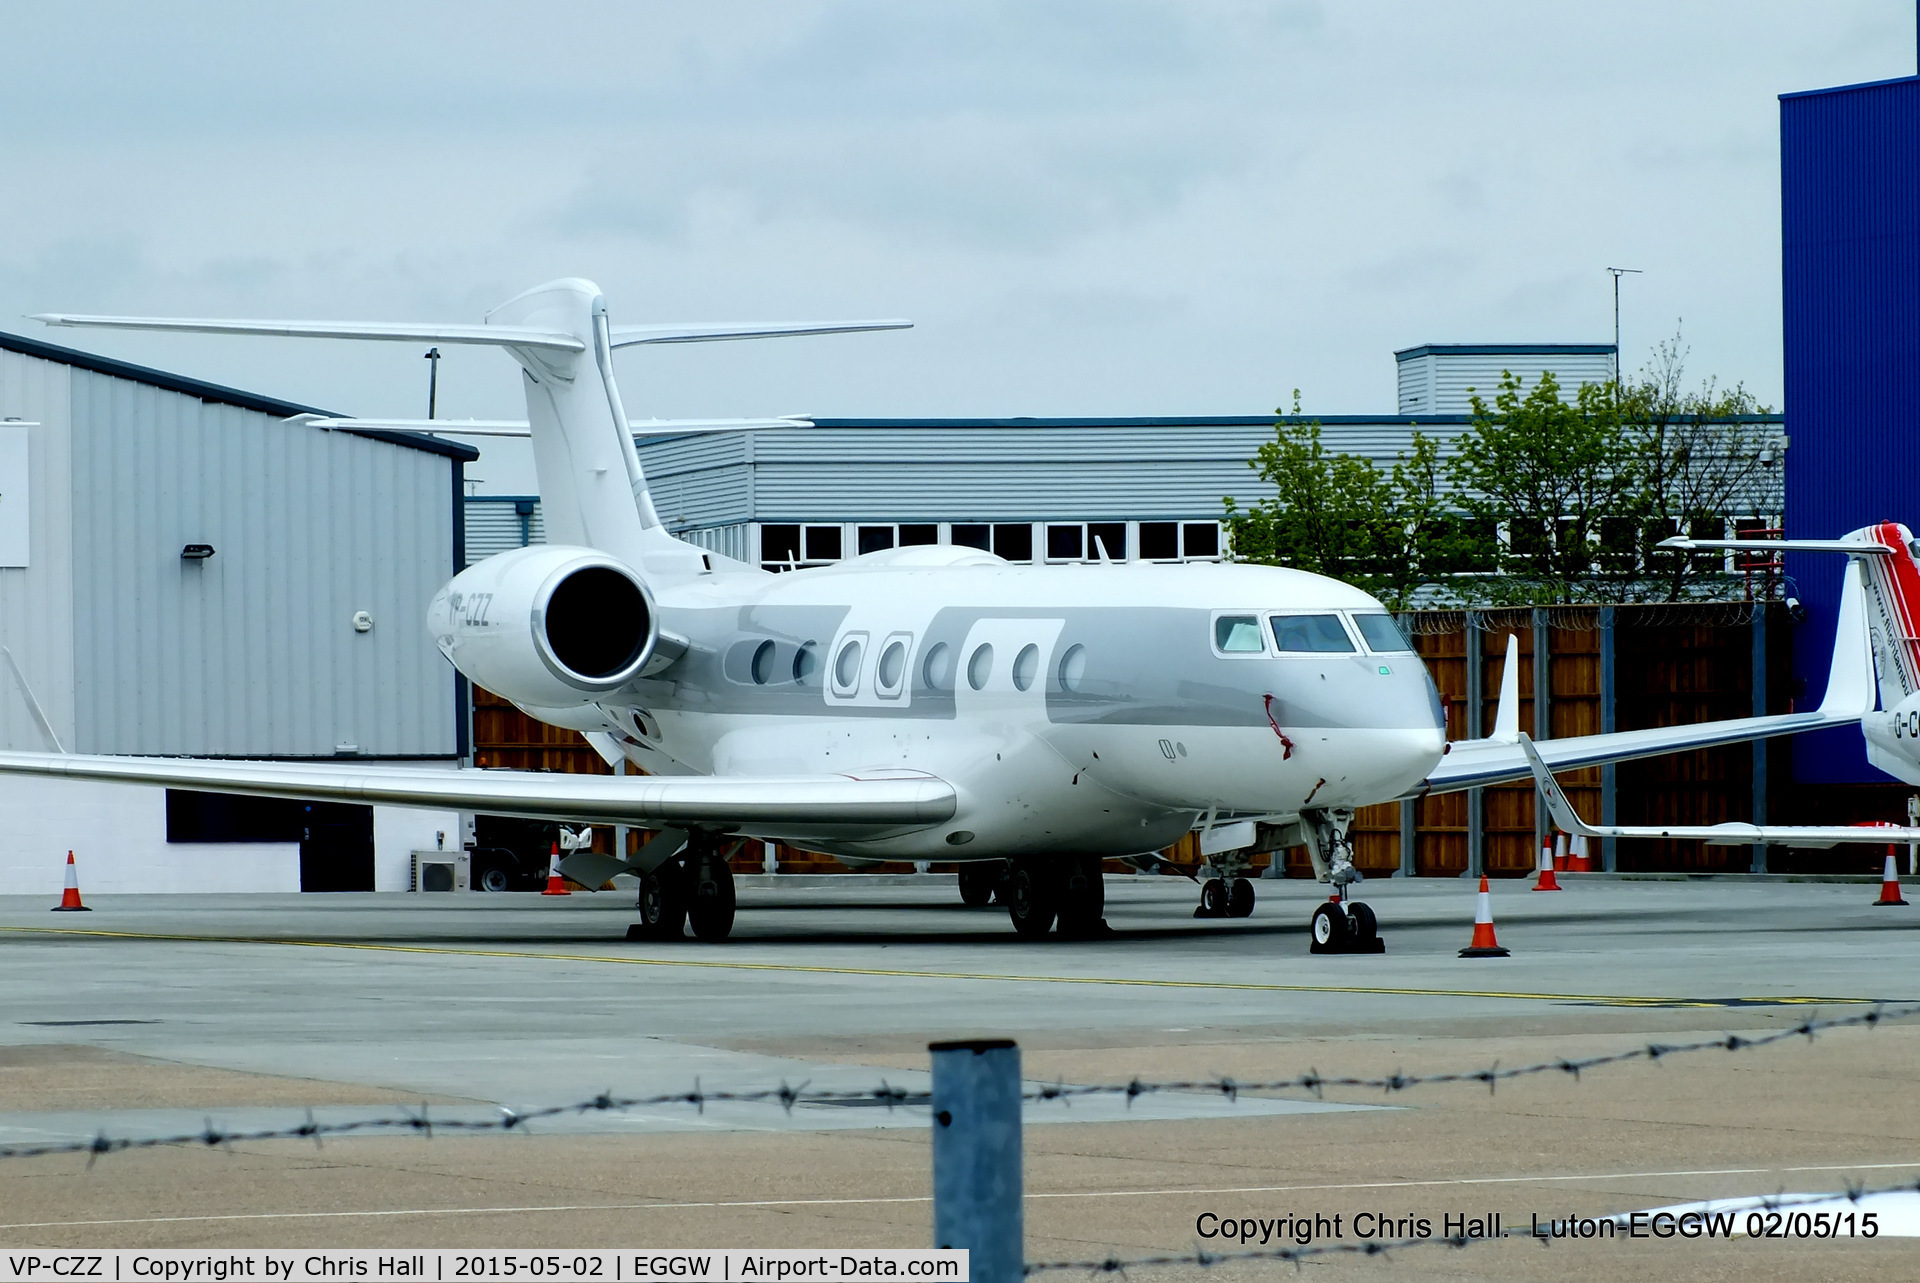 VP-CZZ, 2013 Gulfstream Aerospace G650 (G-VI) C/N 6025, parked at Luton